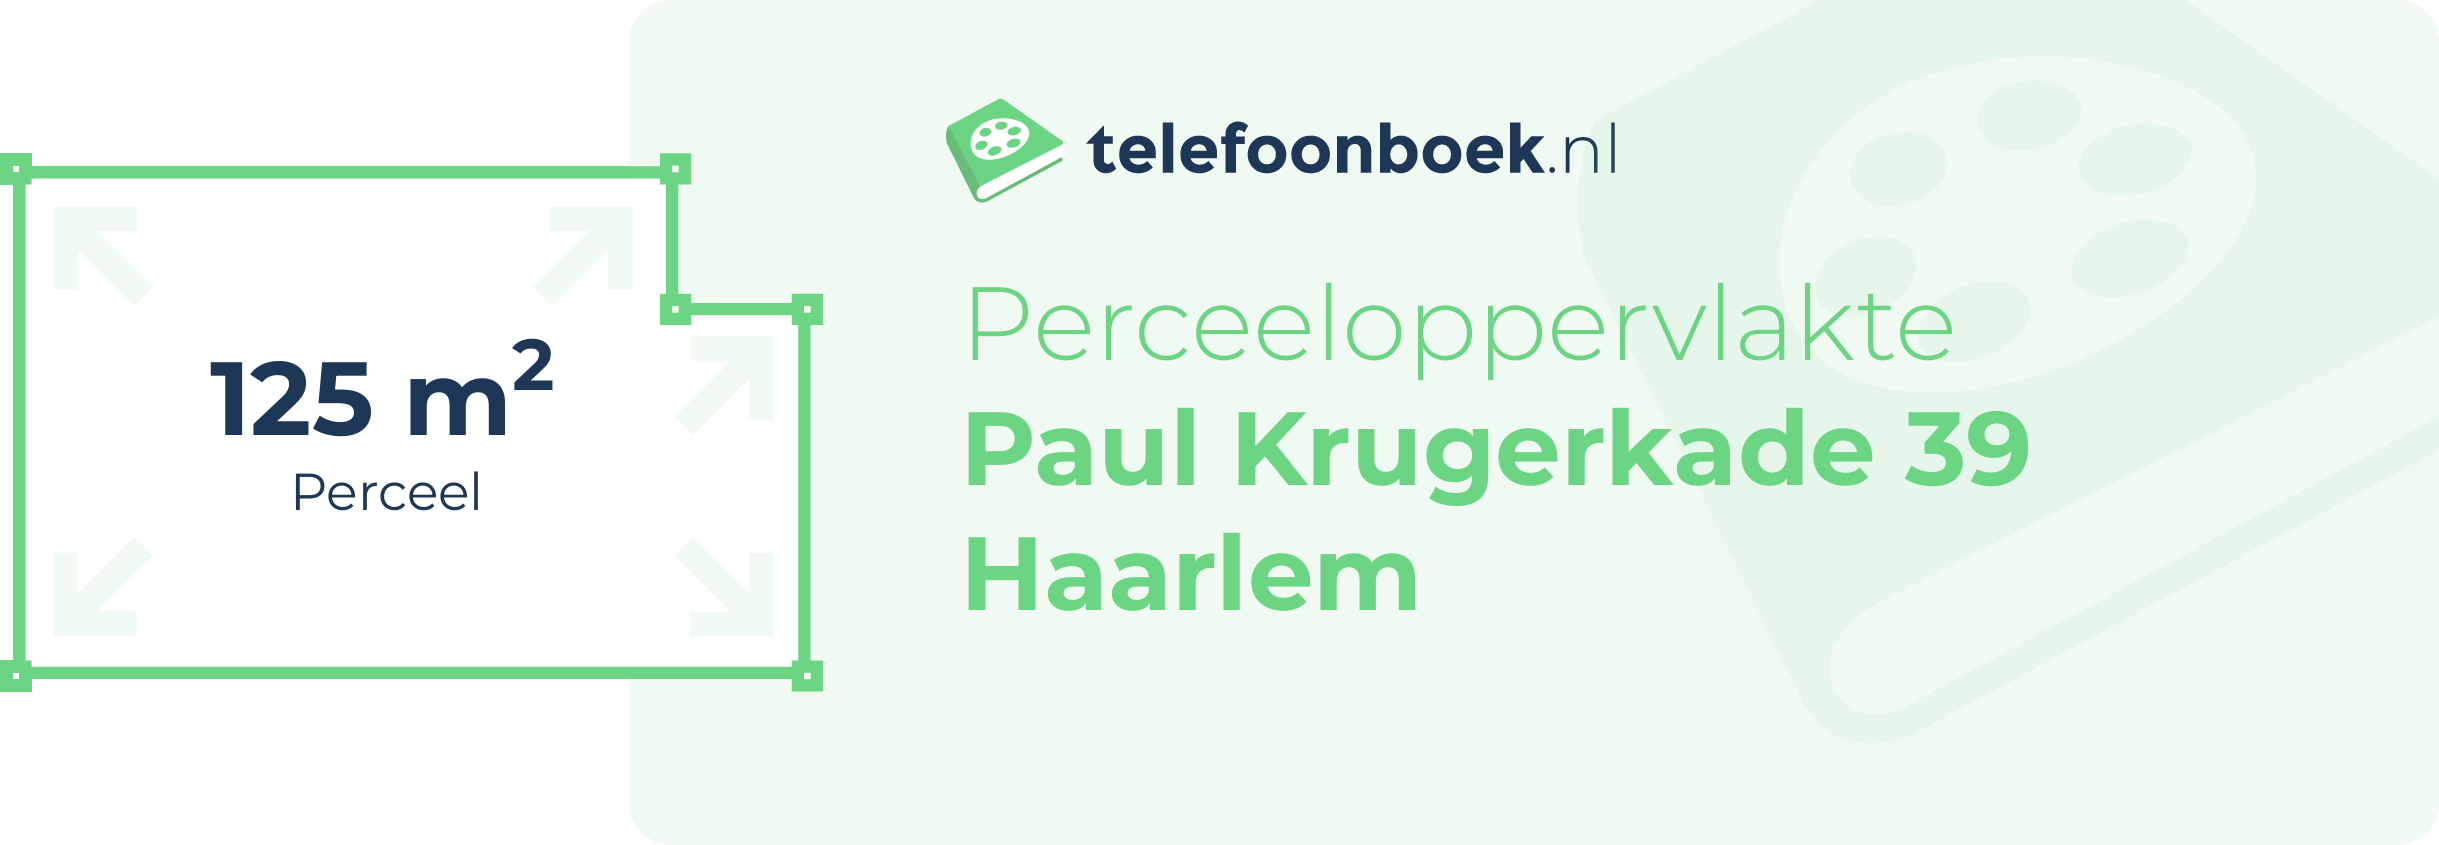 Perceeloppervlakte Paul Krugerkade 39 Haarlem